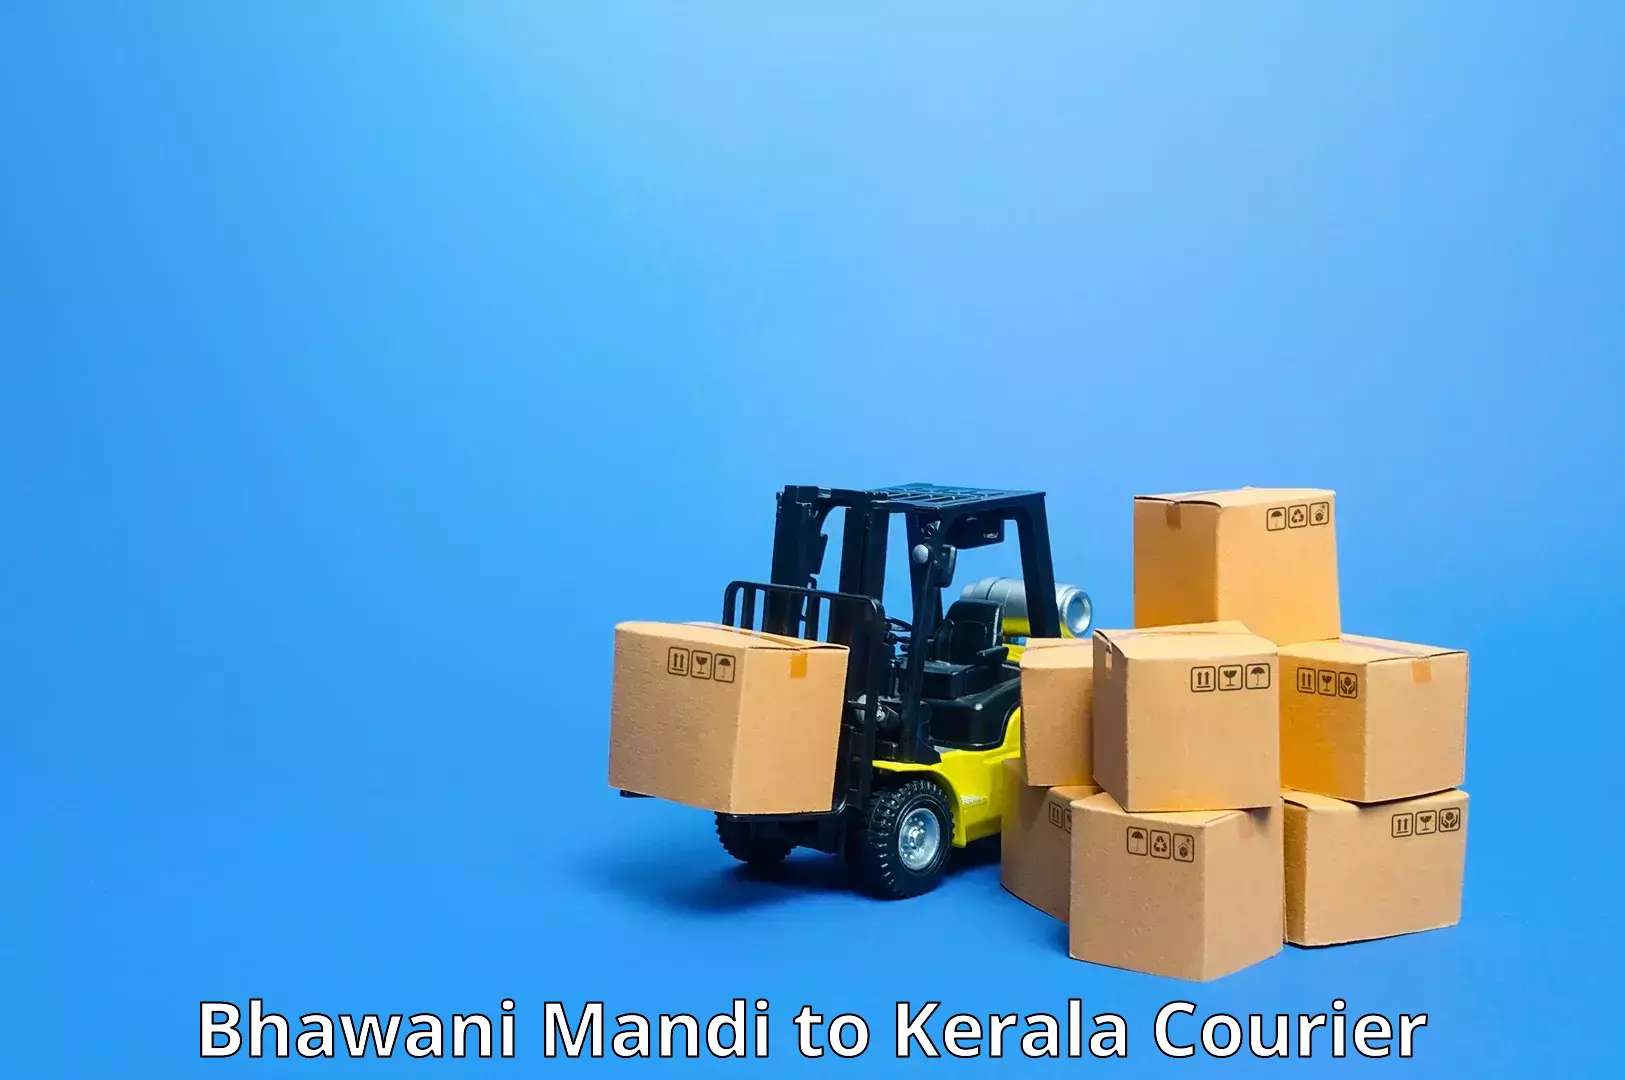 Cost-effective freight solutions Bhawani Mandi to Kerala